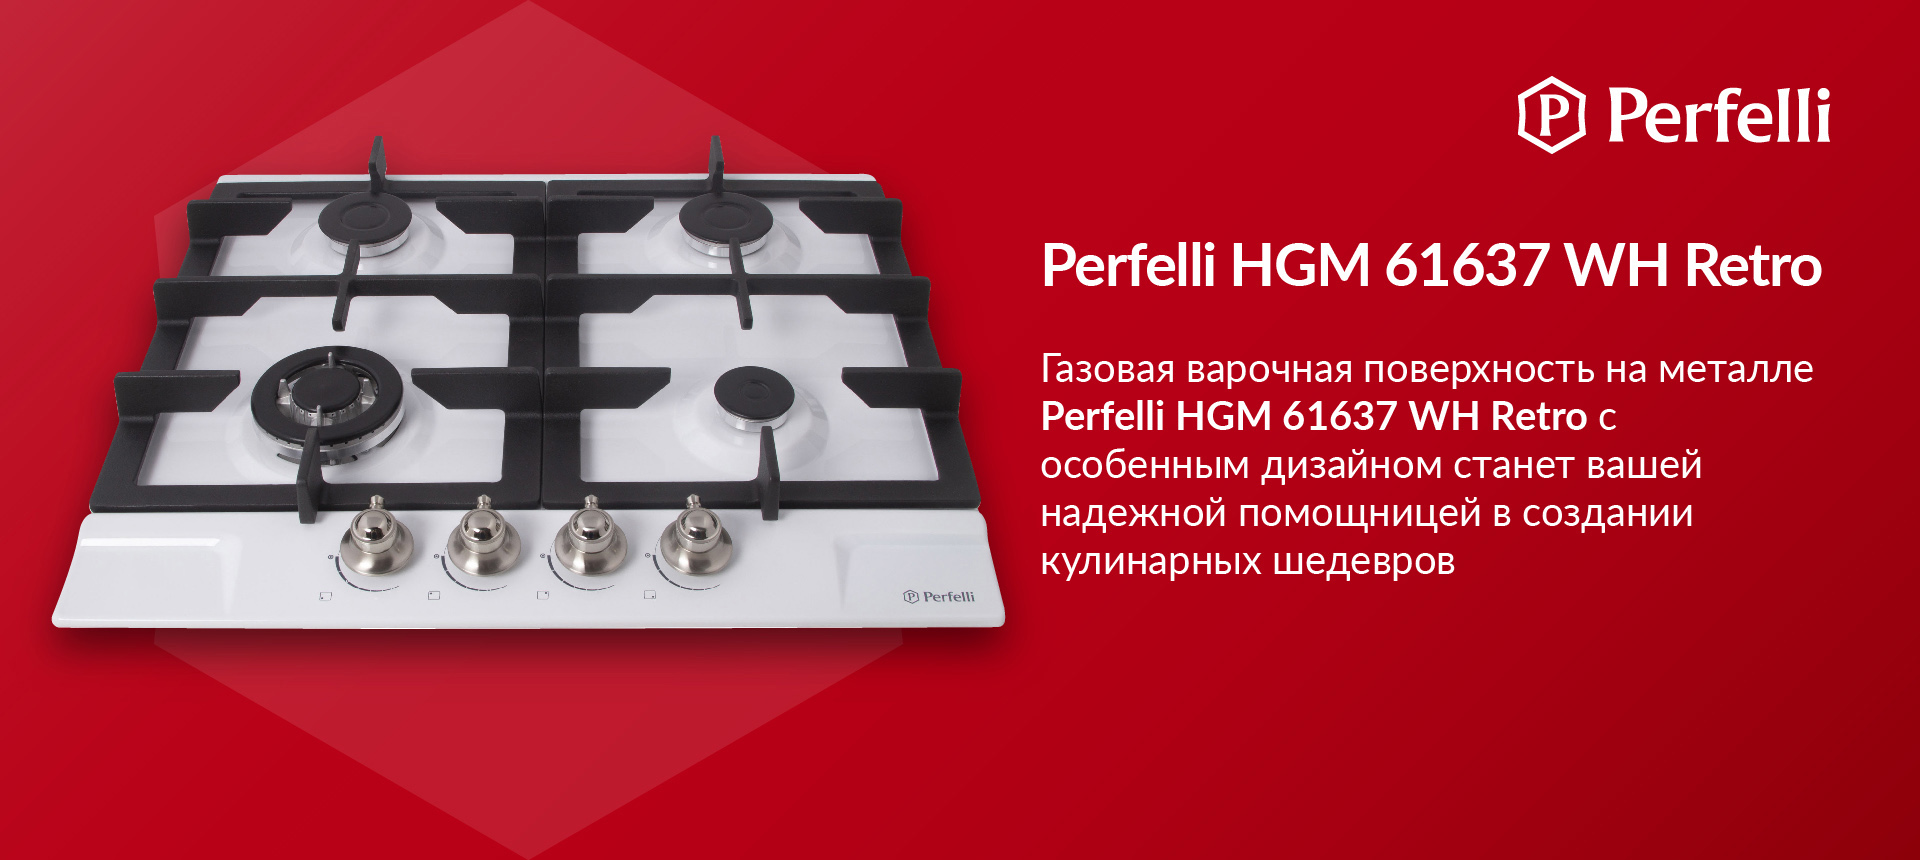 Газовая варочная поверхность на металле Perfelli HGM 61637 WH RETRO с особенным дизайном станет вашей надежной помощницей в создании кулинарных шедевров